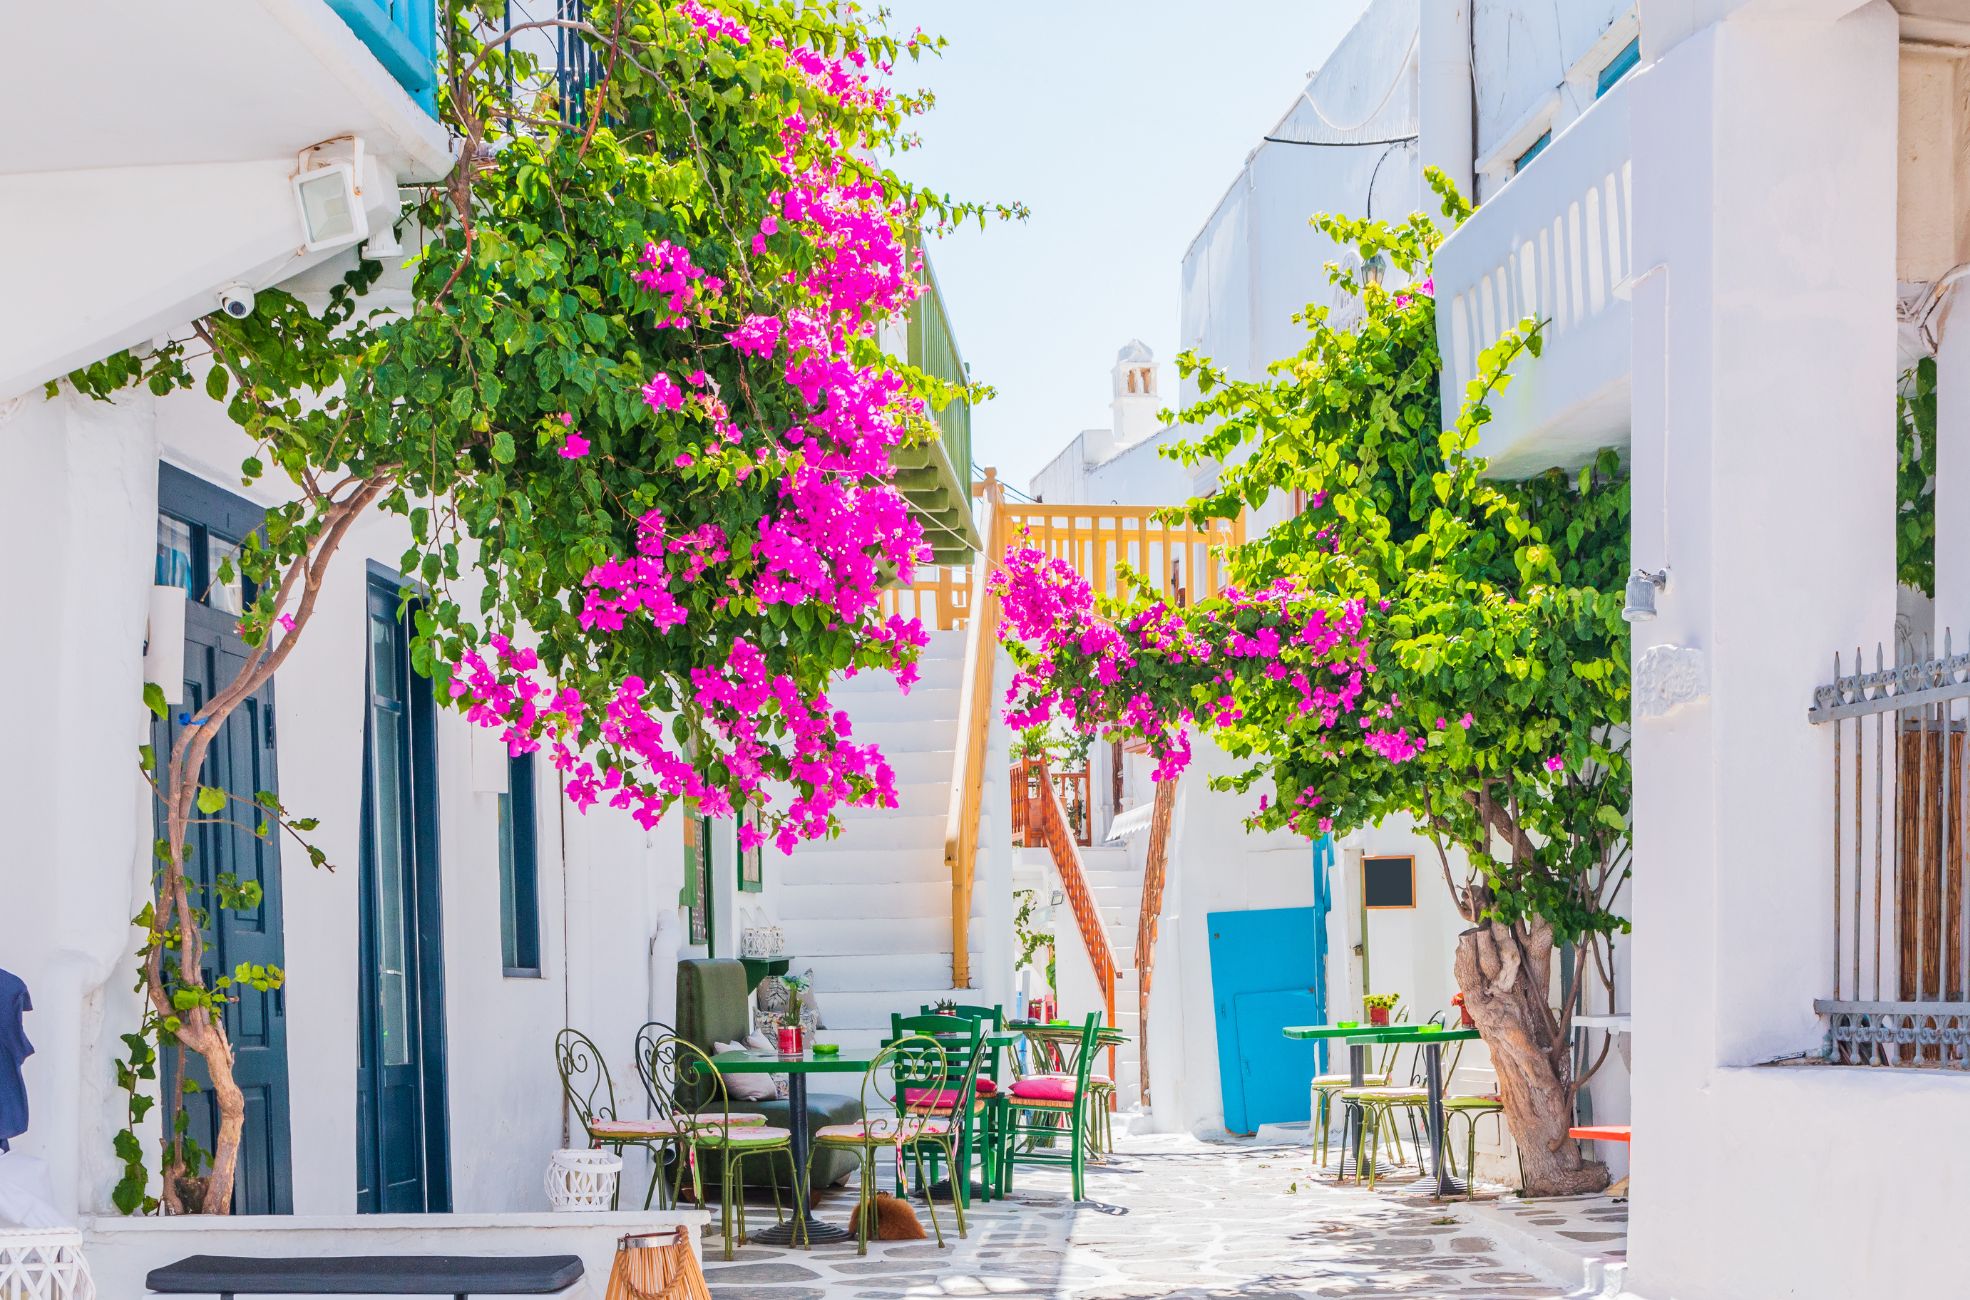 Flowers In A Street In Greece